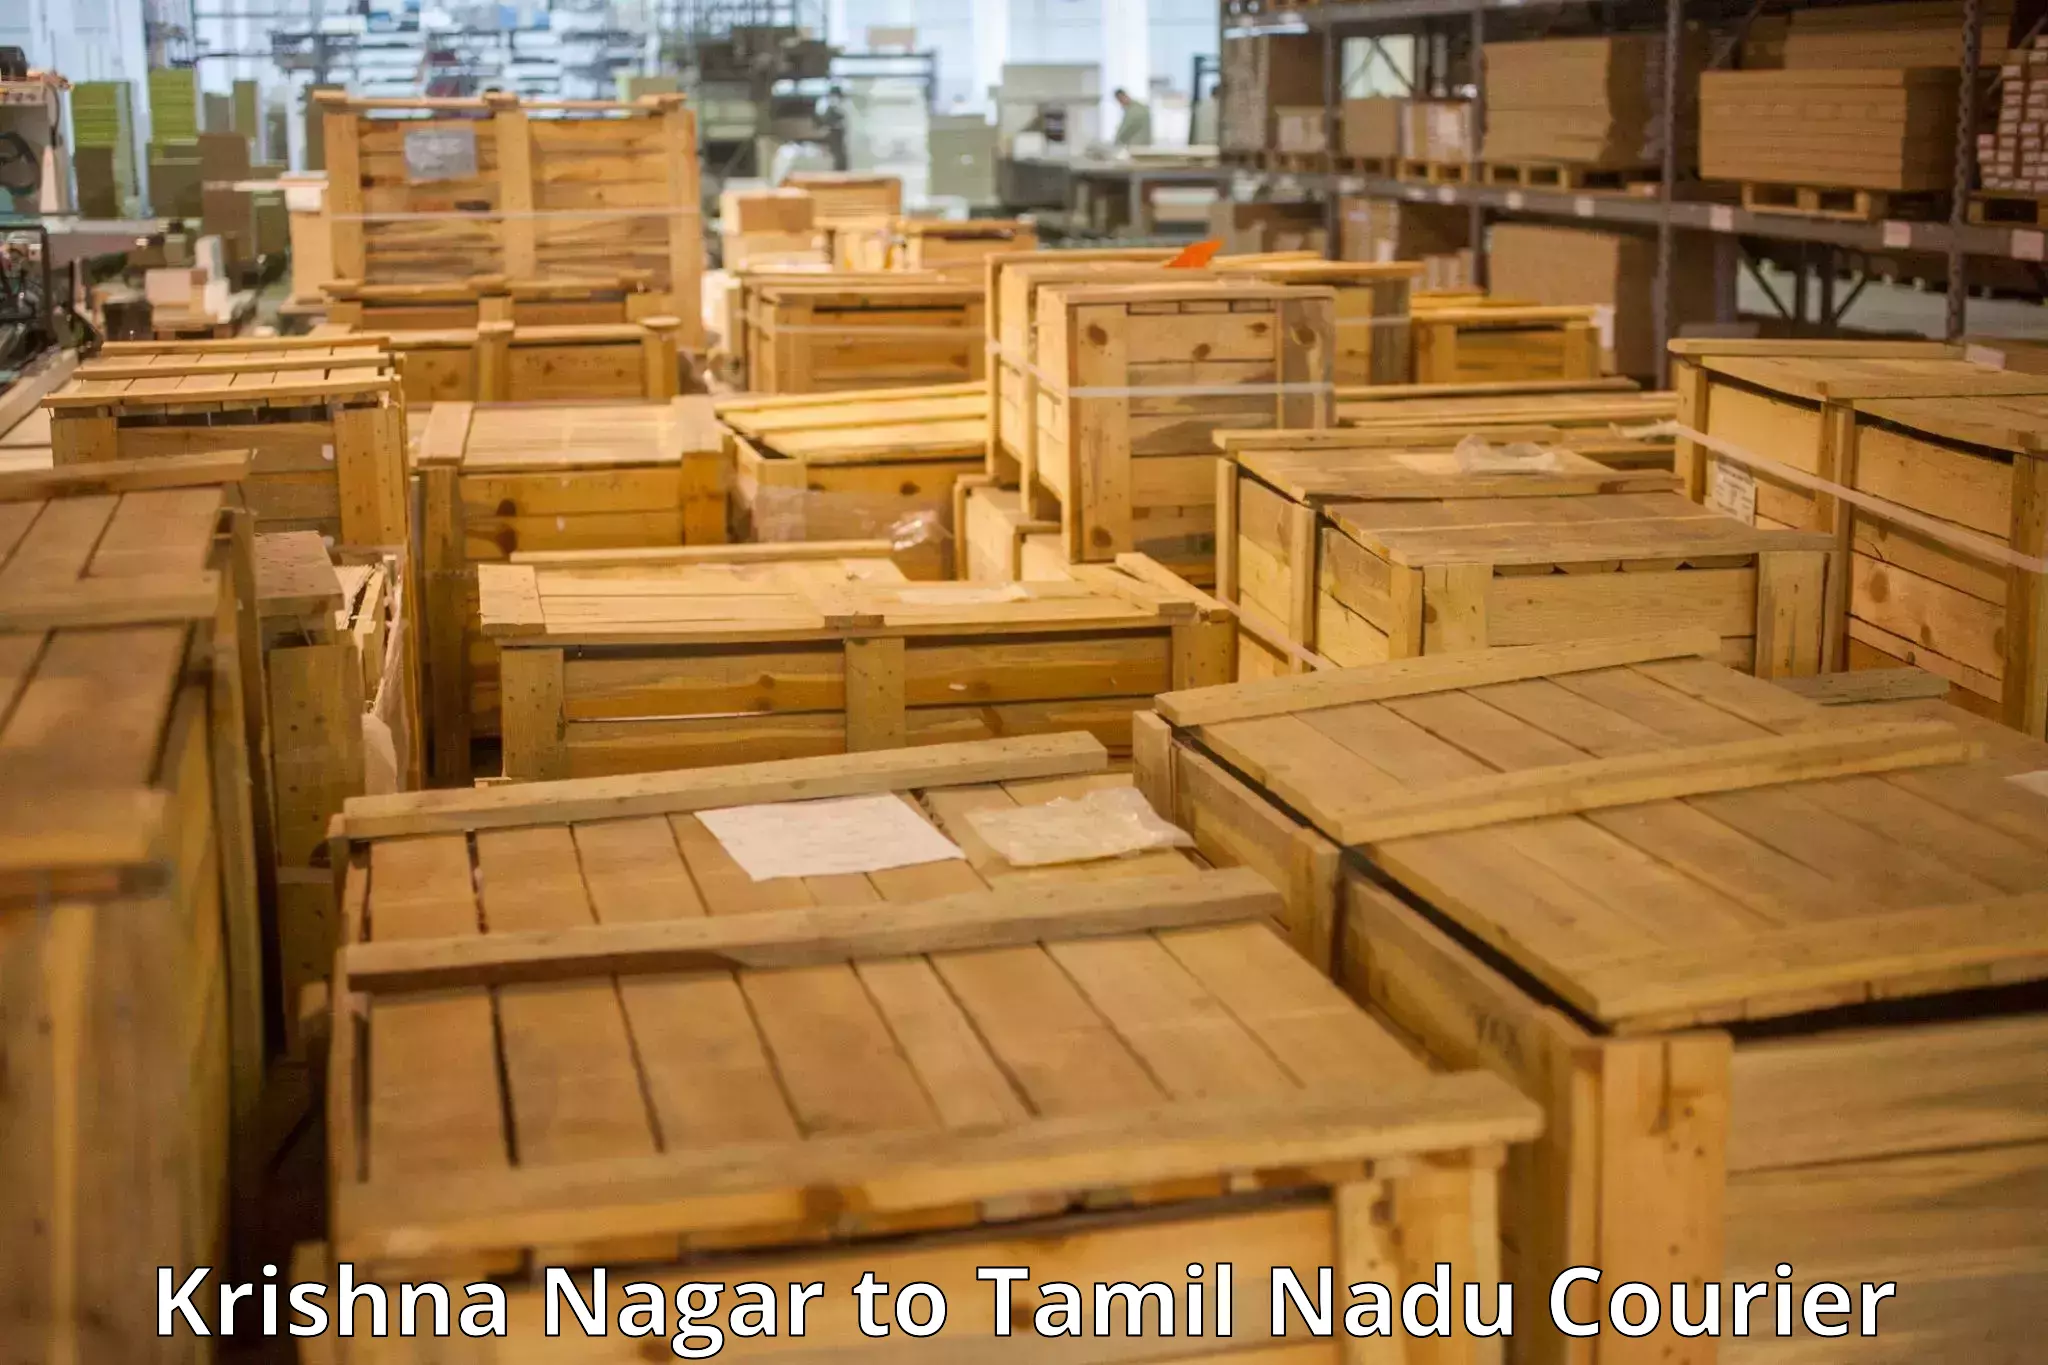 Luggage transport consulting Krishna Nagar to Tamil Nadu